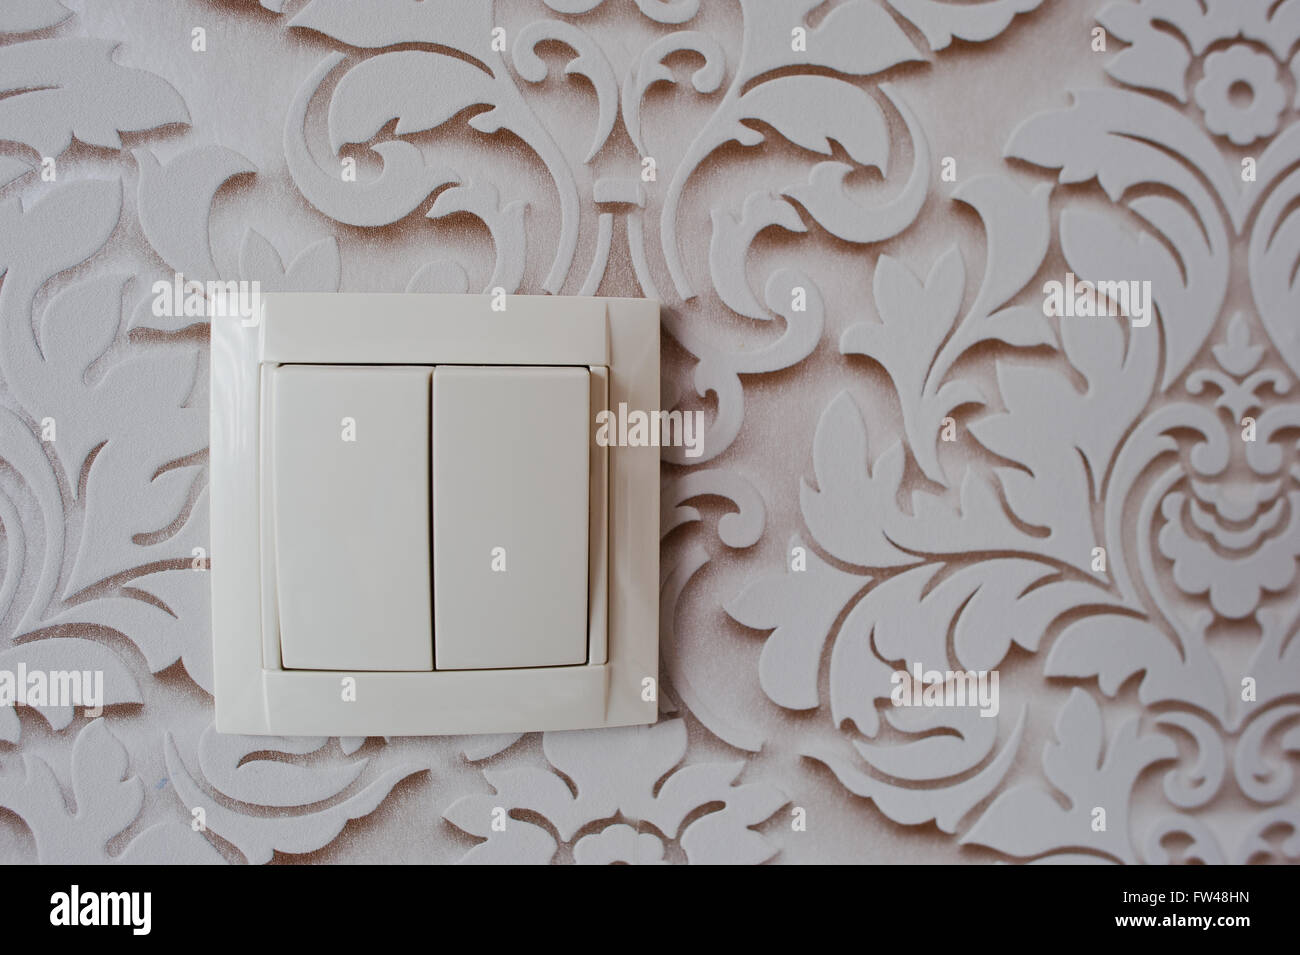 Interruptores de luz de diseño para decoración - ATR